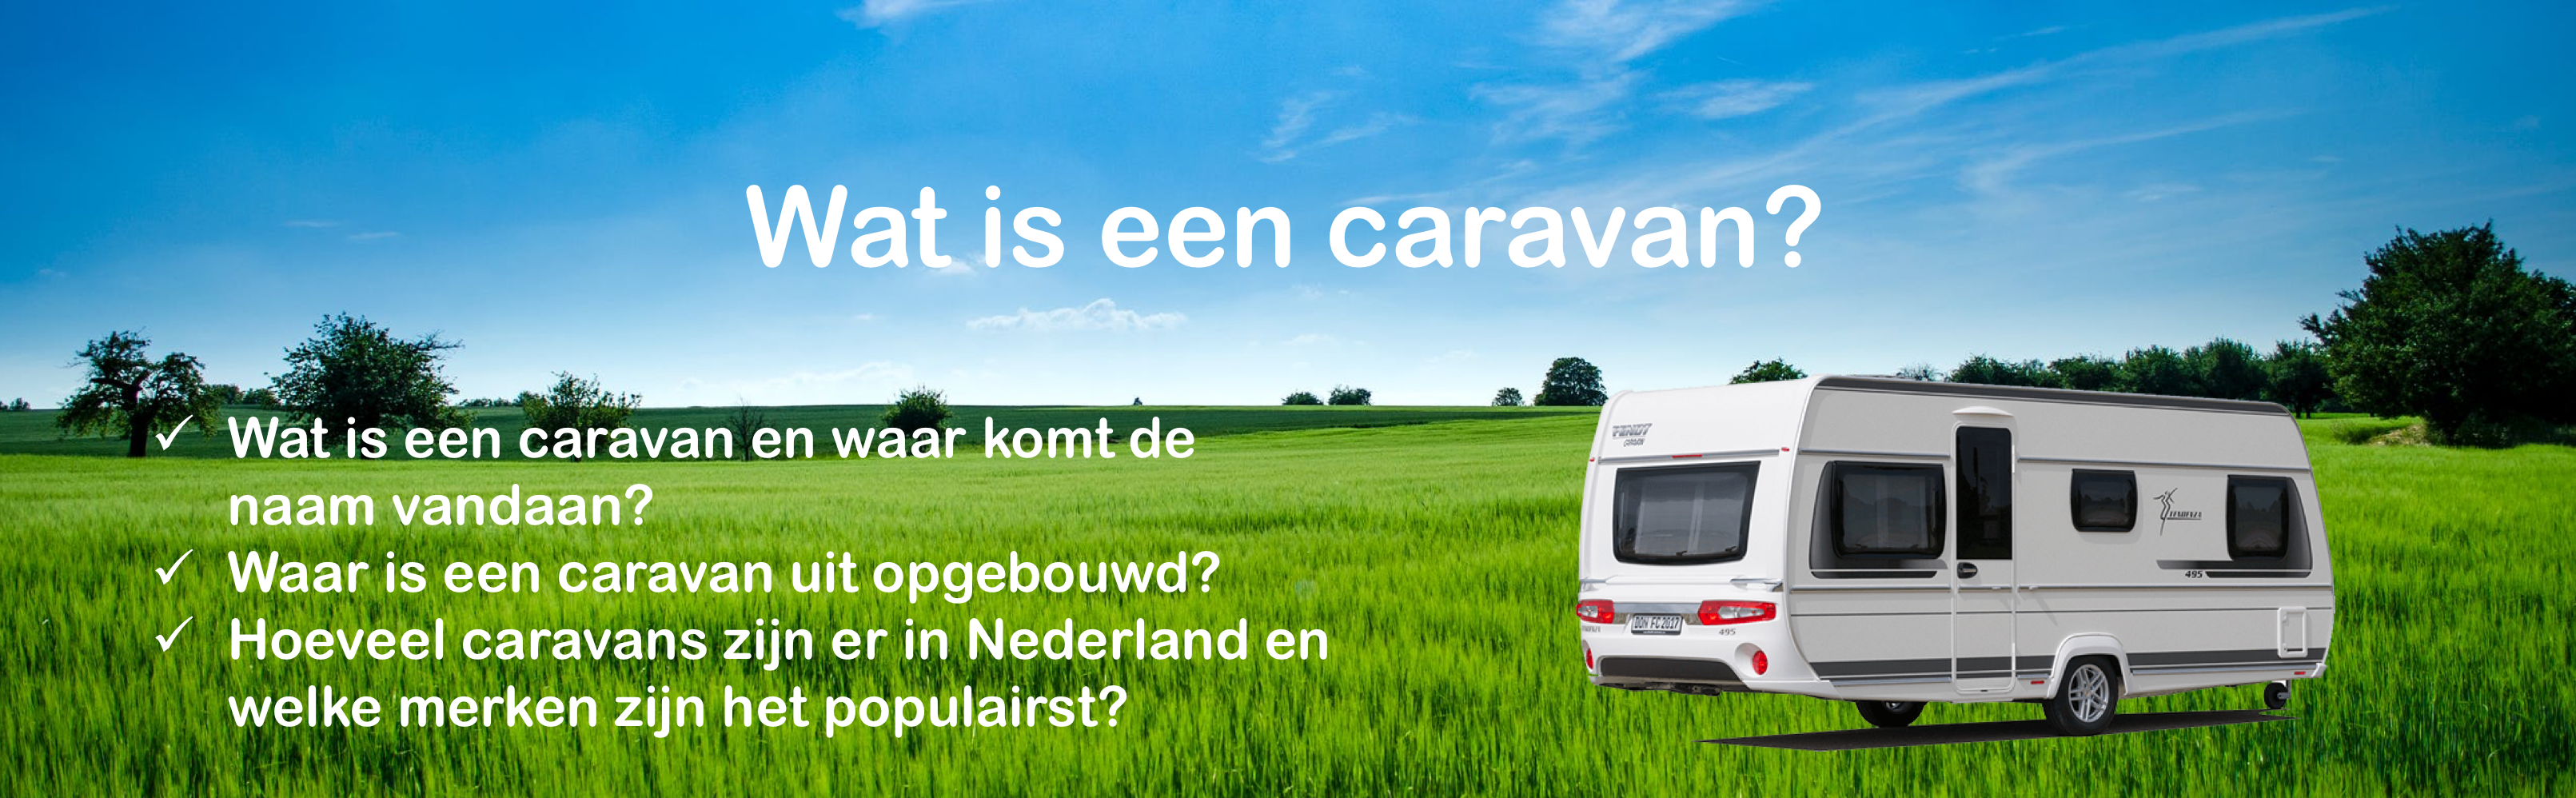 Wat is een caravan?